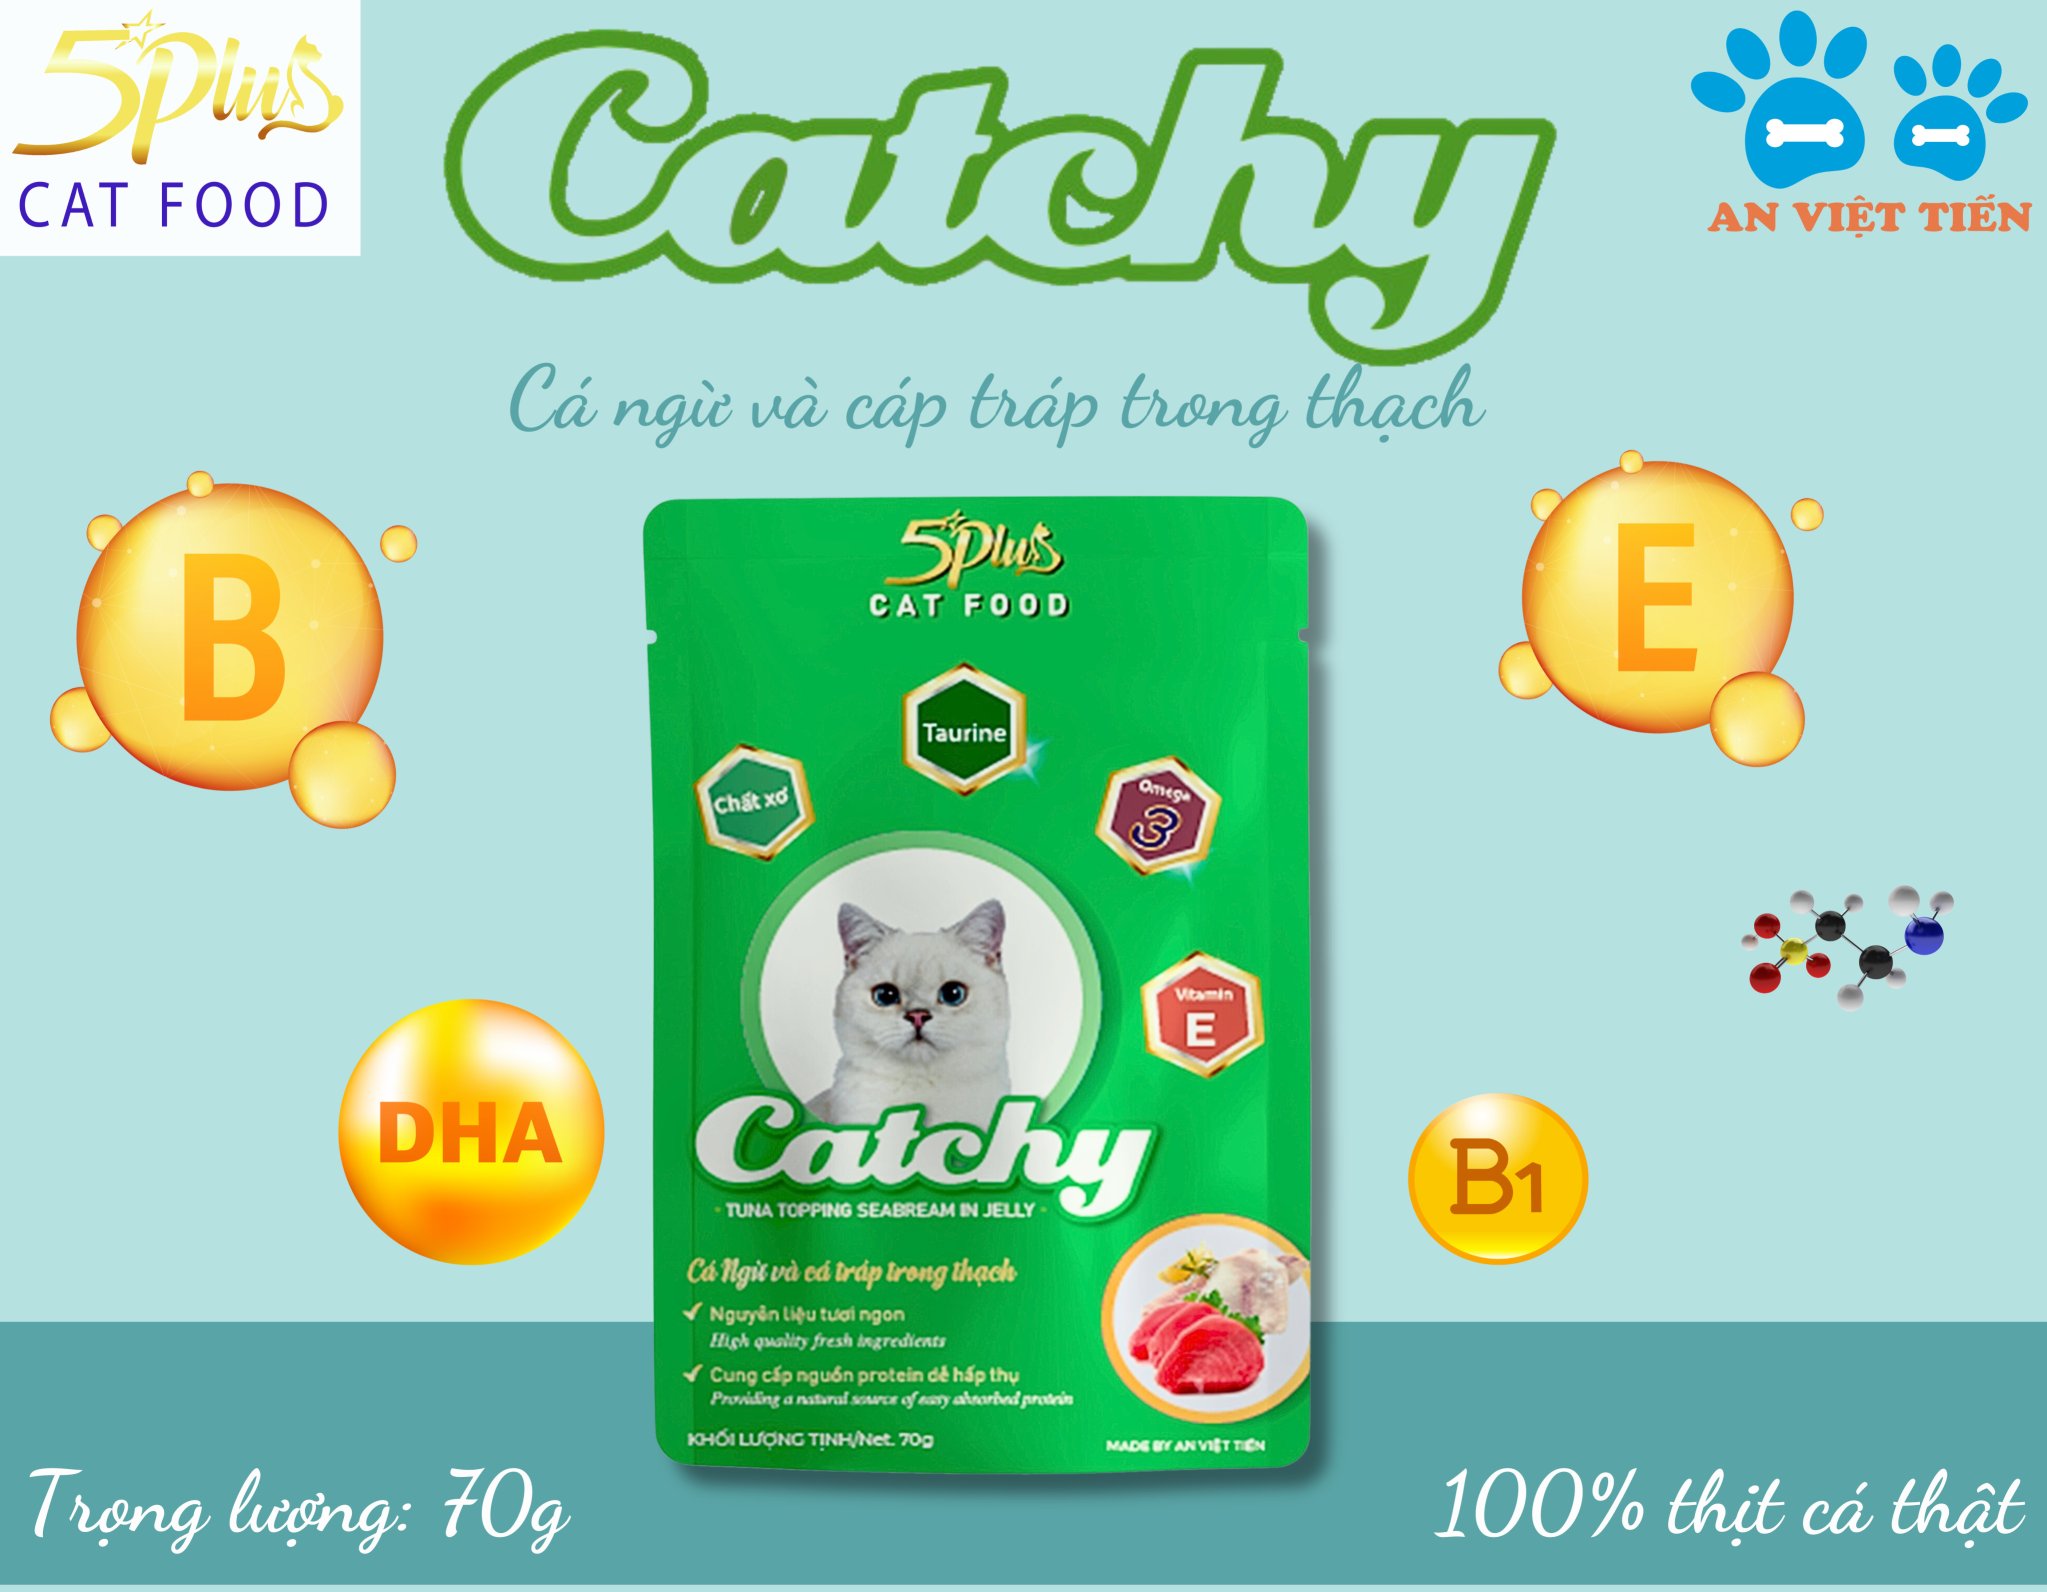 Pate cho mèo mọi lứa tuổi CATCHY 5PLUS CAT FOOD _ THÙNG 48 túi 70g mix vị